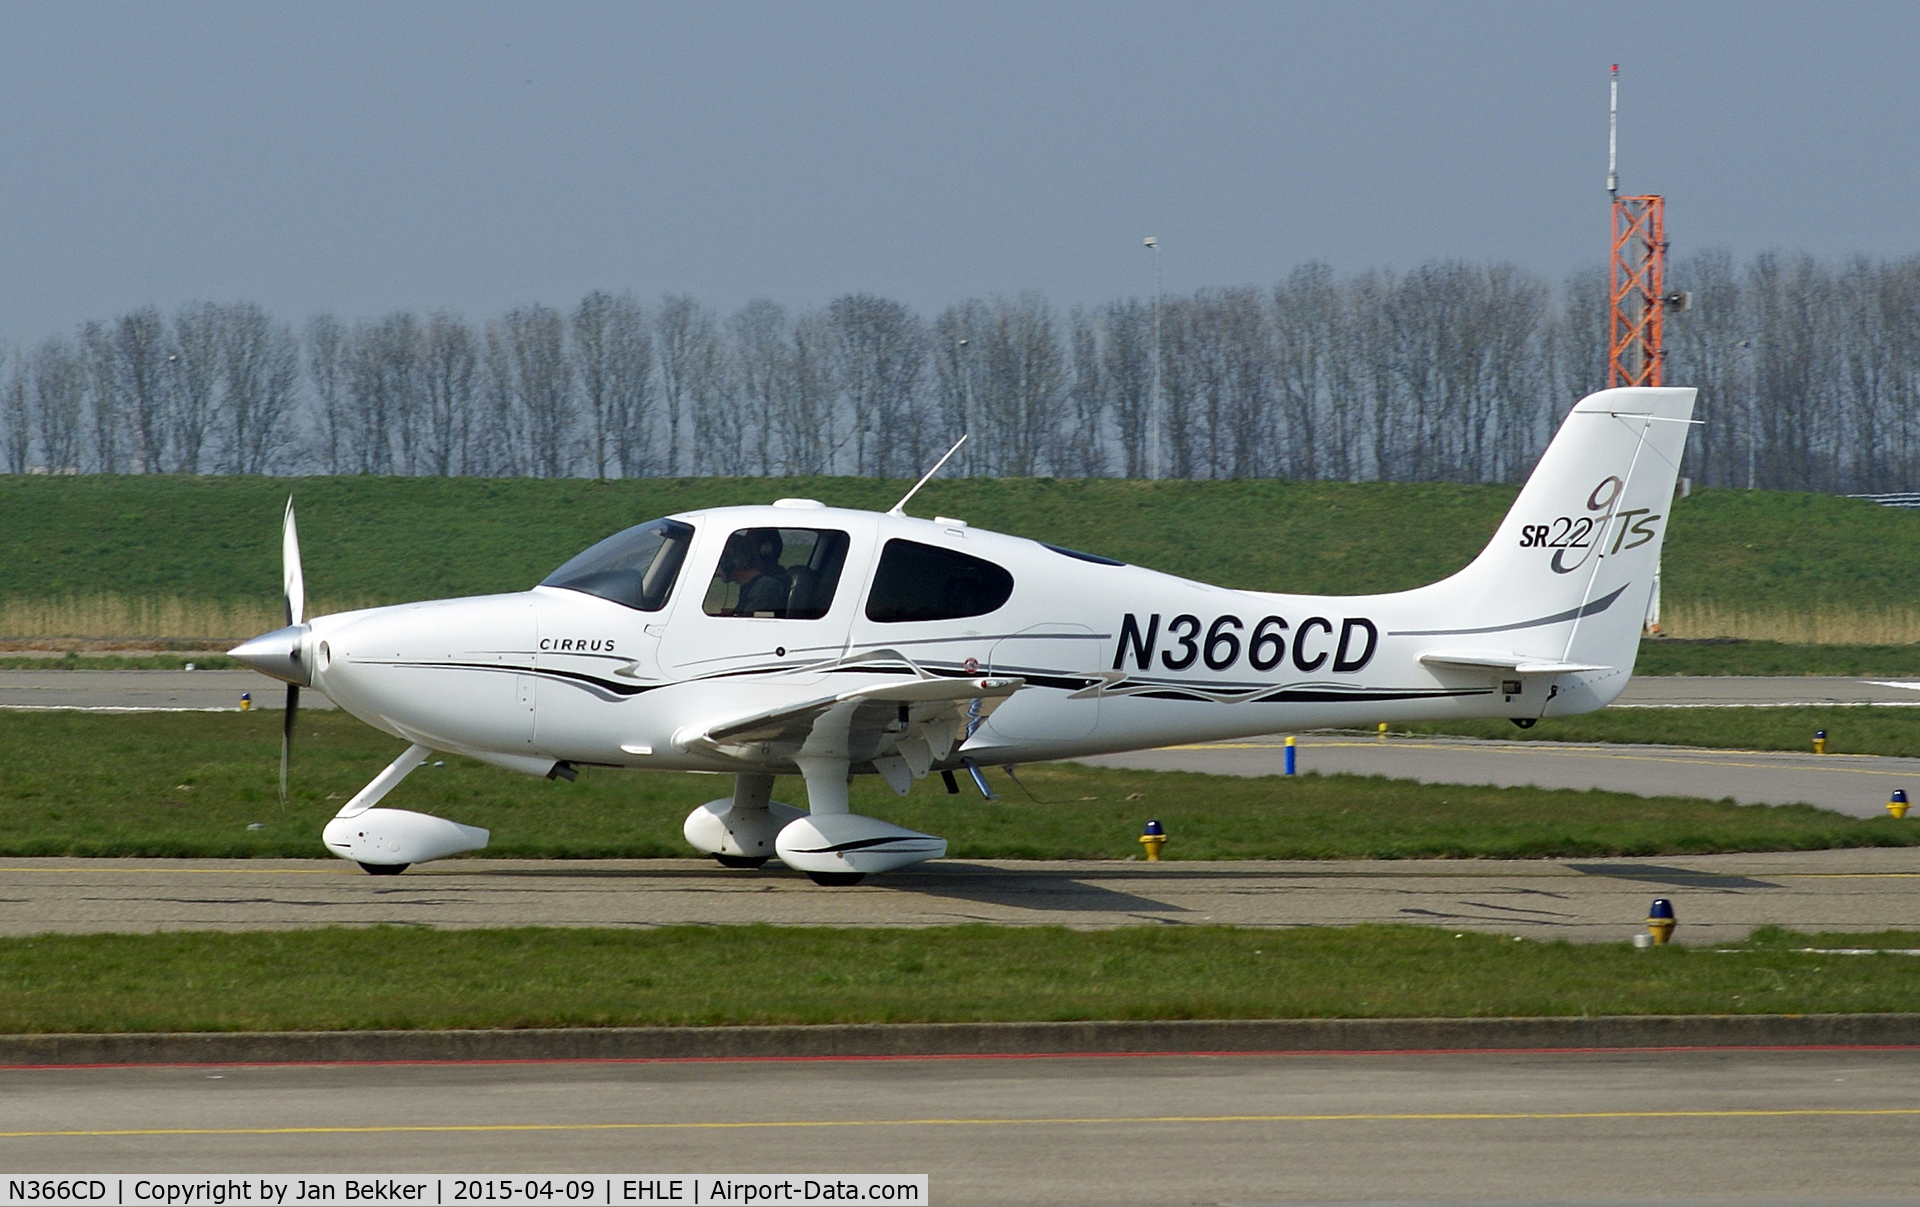 N366CD, 2005 Cirrus SR22 GTS C/N 1369, Airport Lelystad